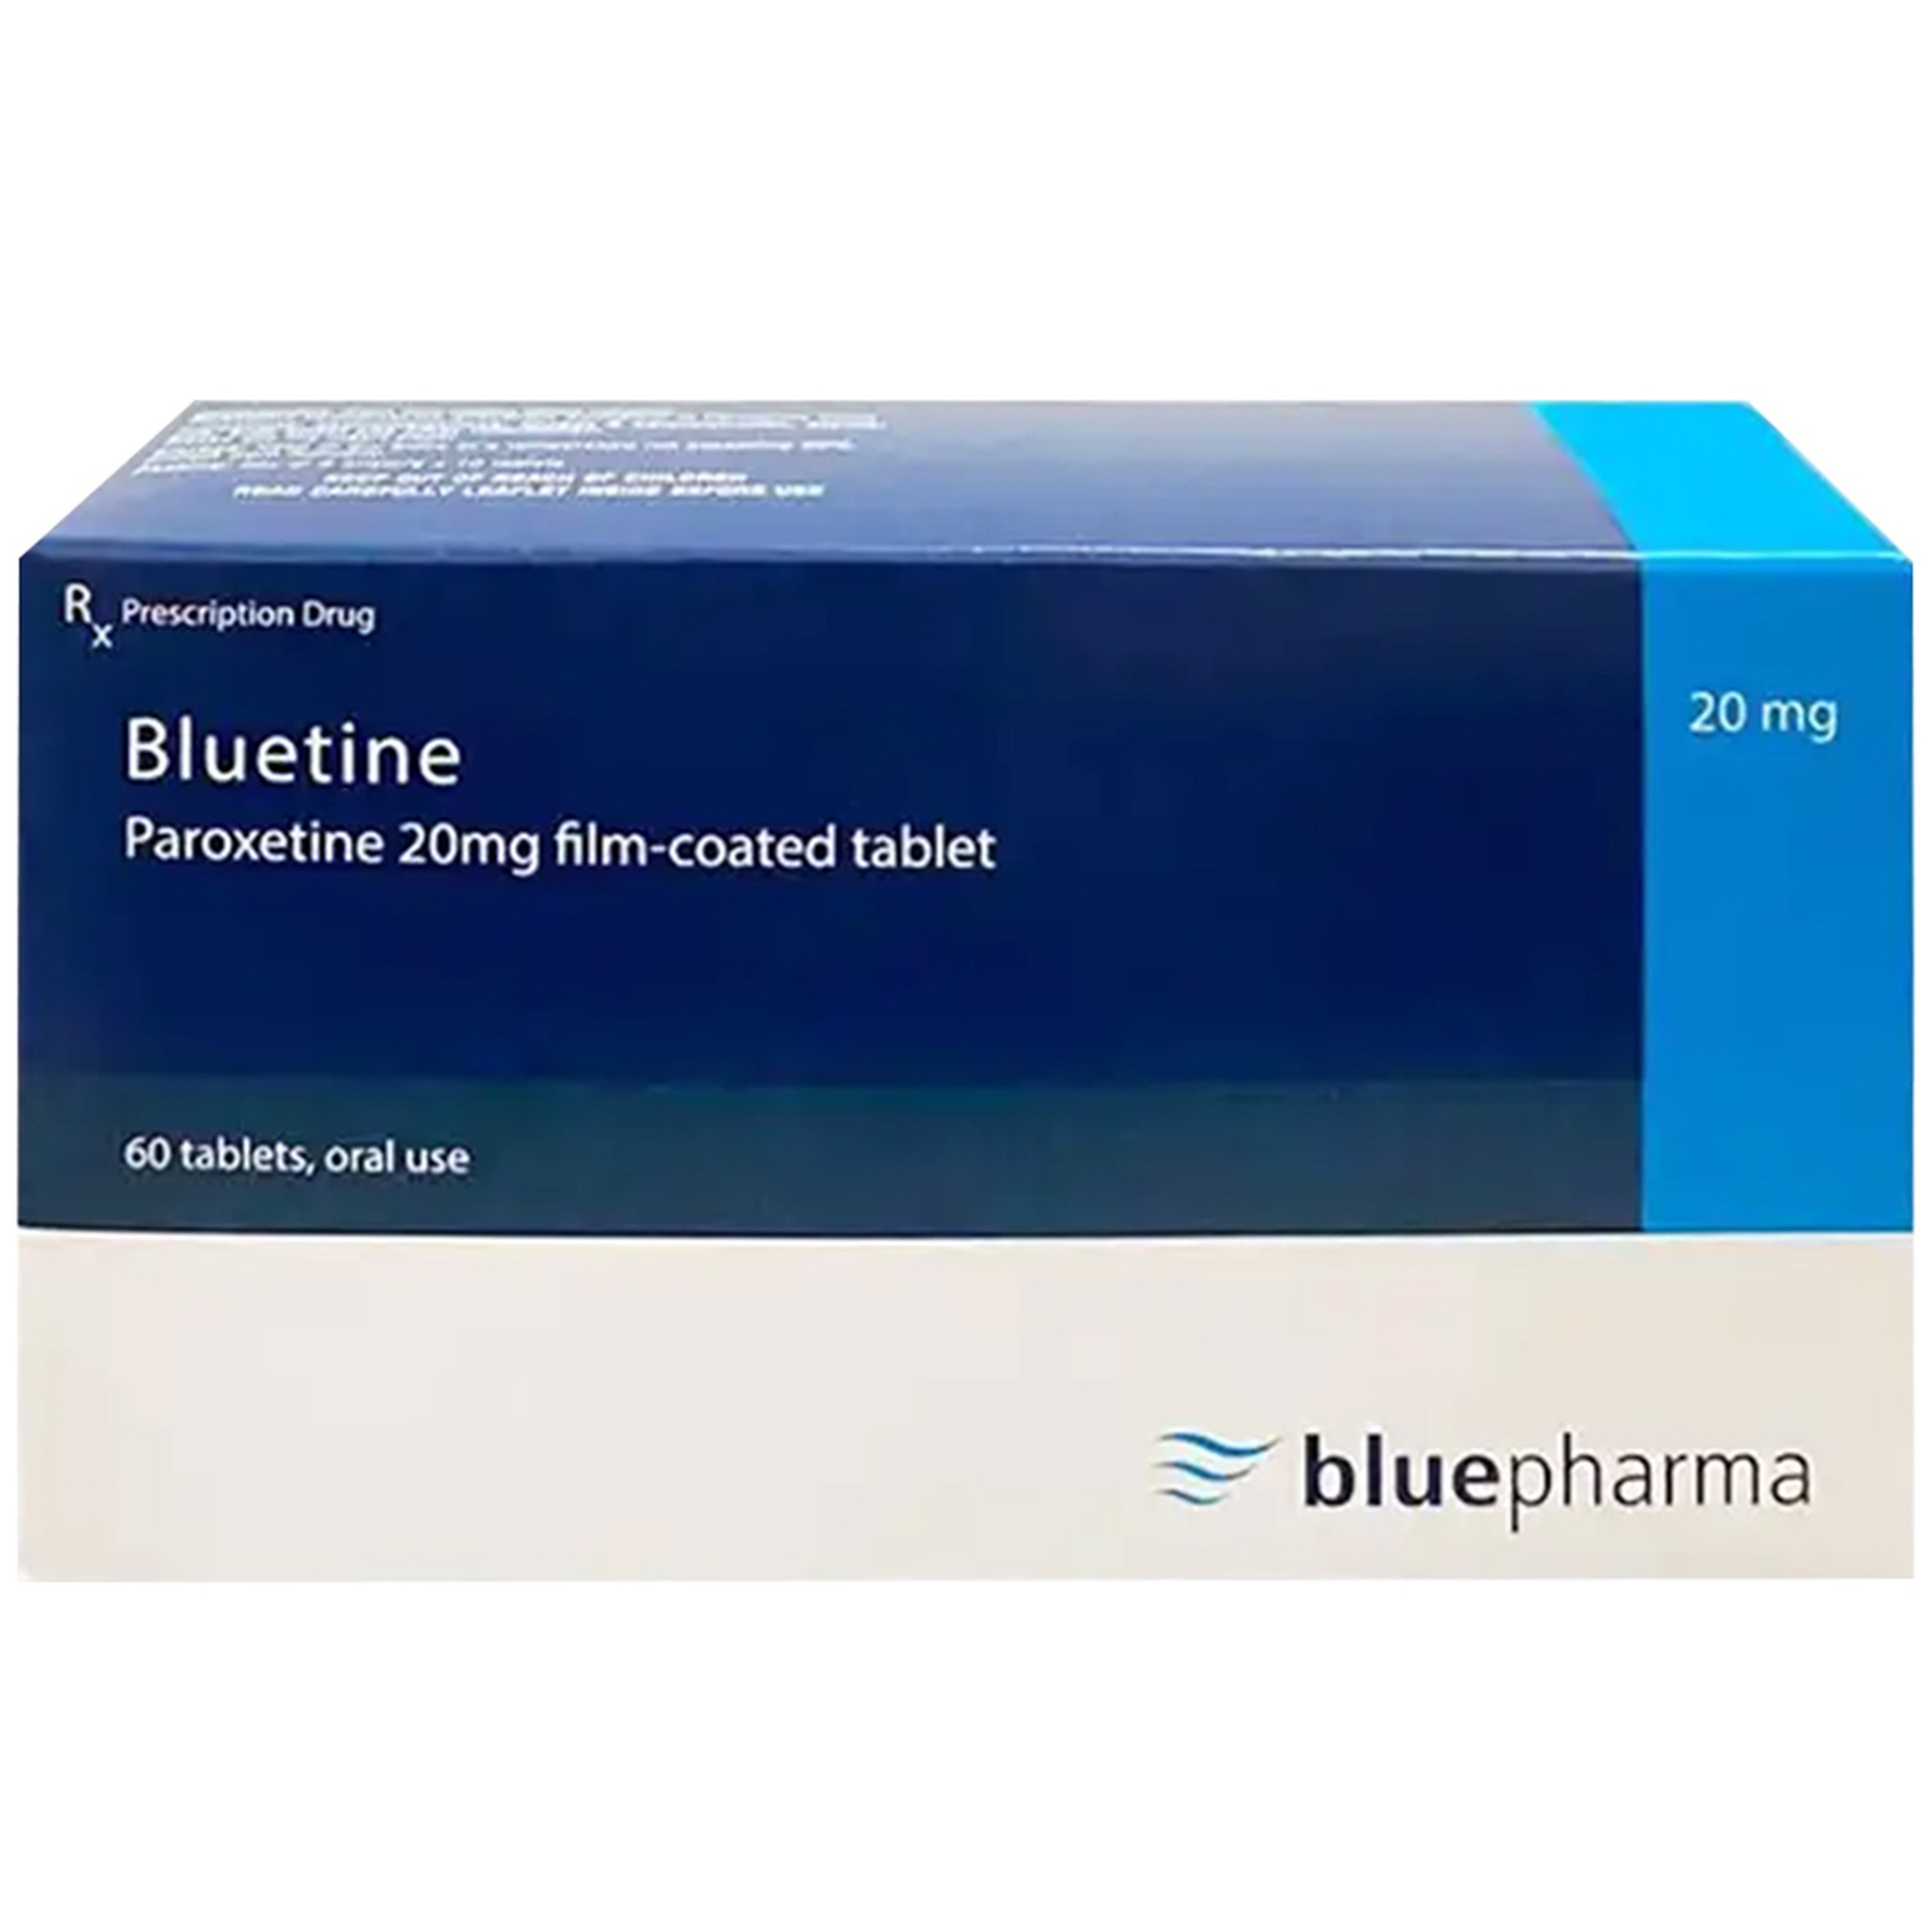 Thuốc Bluetine 20mg Bluepharma điều trị giai đoạn trầm cảm nặng, rối loạn hoảng sợ, rối loạn stress sau chấn thương (6 vỉ x 10 viên)